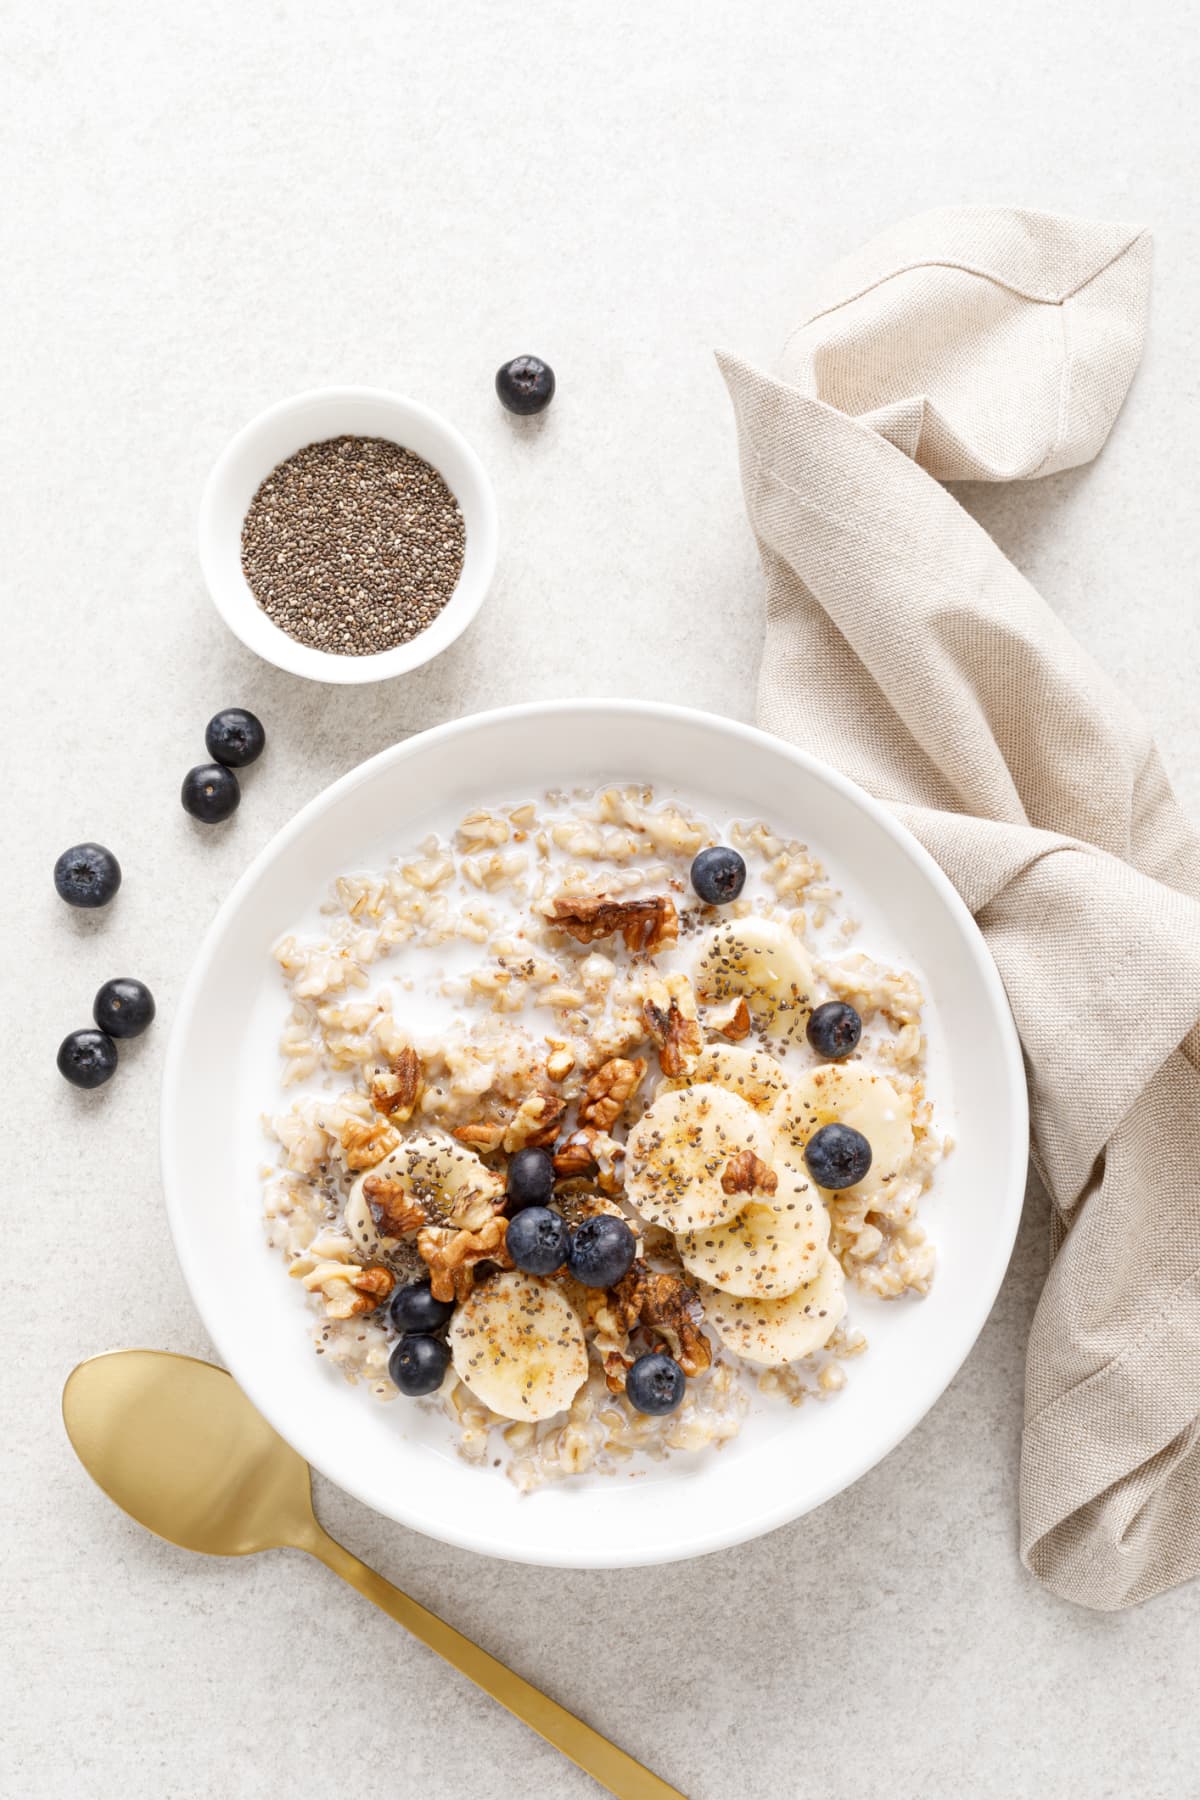 Healthy breakfast oatmeal porridge wit blueberries, cranberries, wallnuts and chia seeds. Dieting breakfast foods